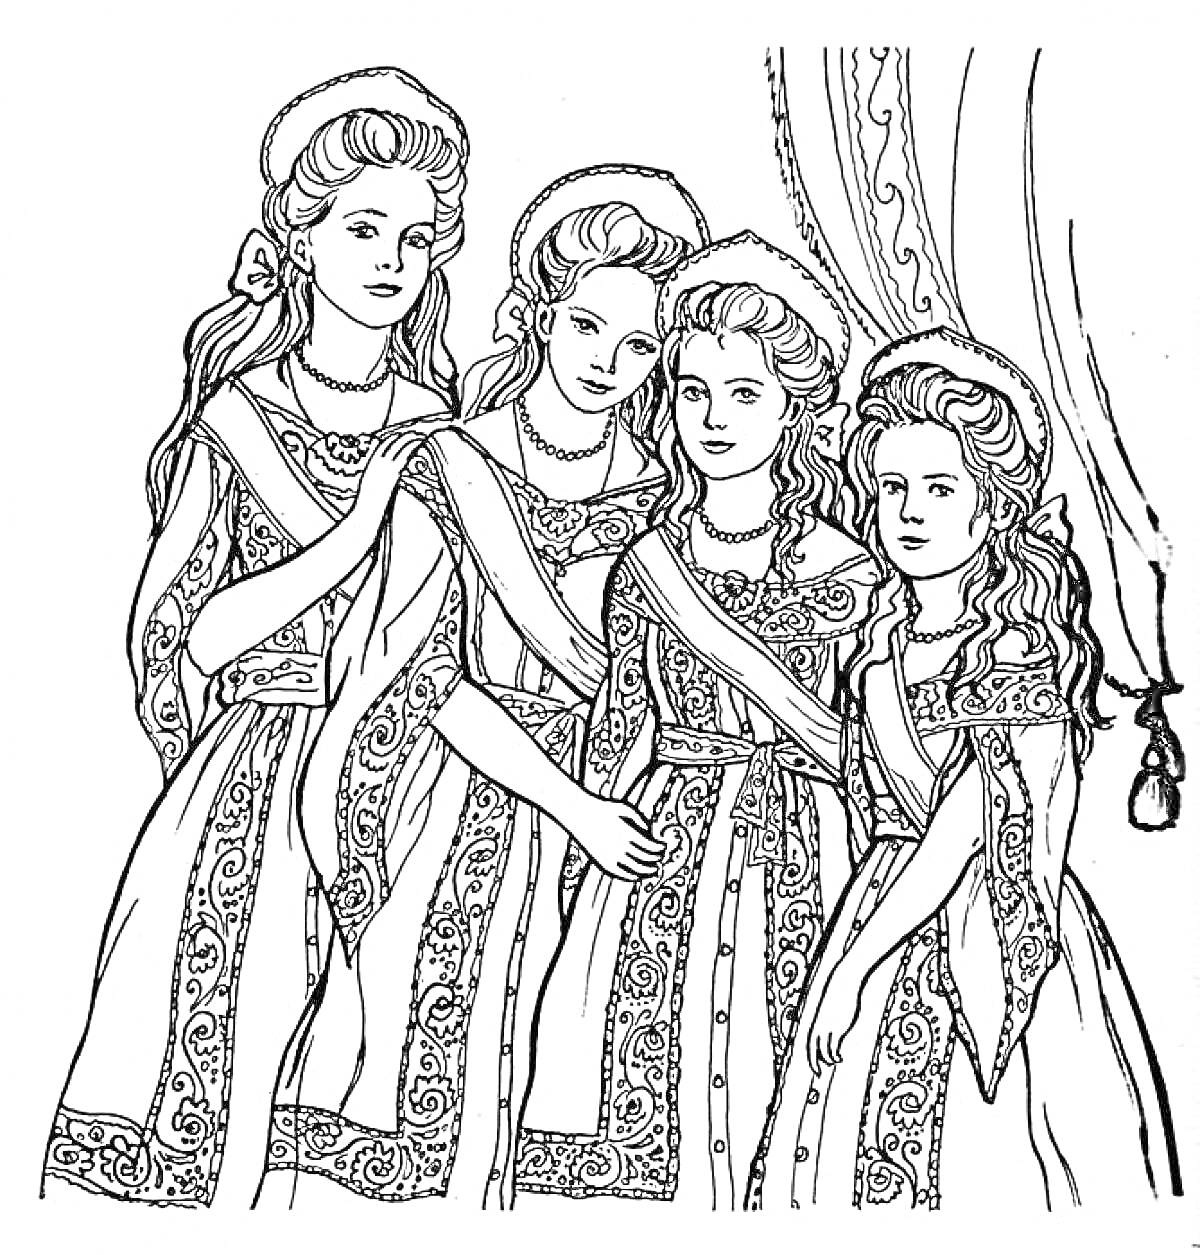 Четыре царевны в украшенных платьях, стоящие у занавески